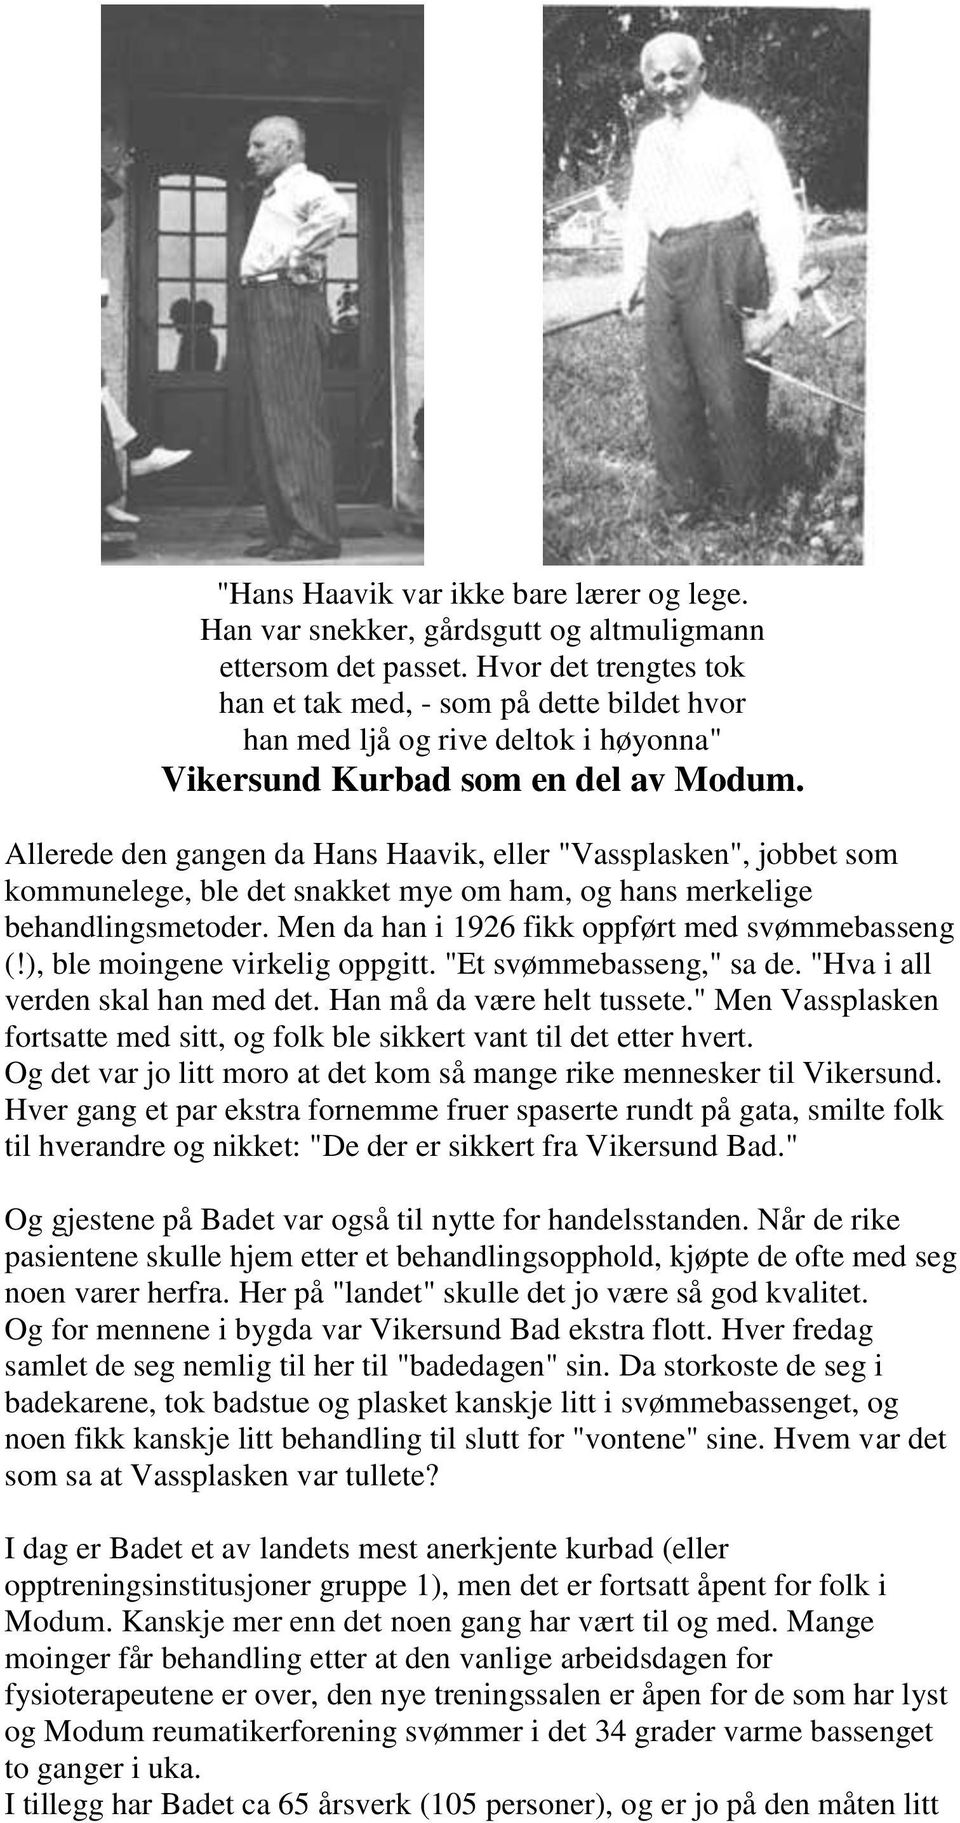 Allerede den gangen da Hans Haavik, eller "Vassplasken", jobbet som kommunelege, ble det snakket mye om ham, og hans merkelige behandlingsmetoder. Men da han i 1926 fikk oppført med svømmebasseng (!